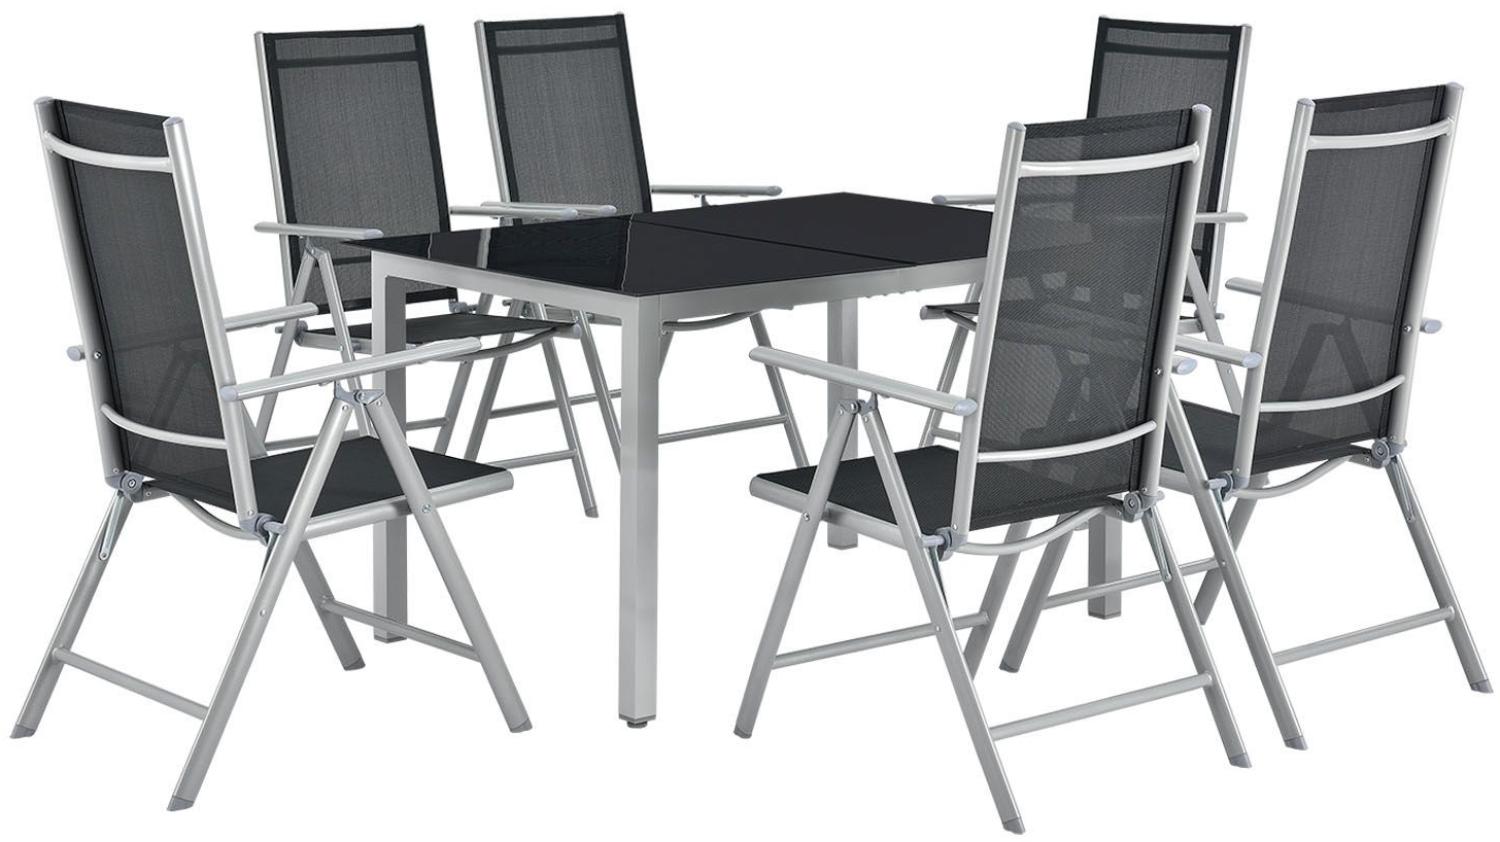 Juskys Aluminium Gartengarnitur Milano Gartenmöbel Set mit Tisch und 6 Stühlen Silber-Grau mit schwarzer Kunstfaser Alu Sitzgruppe Balkonmöbel Bild 1